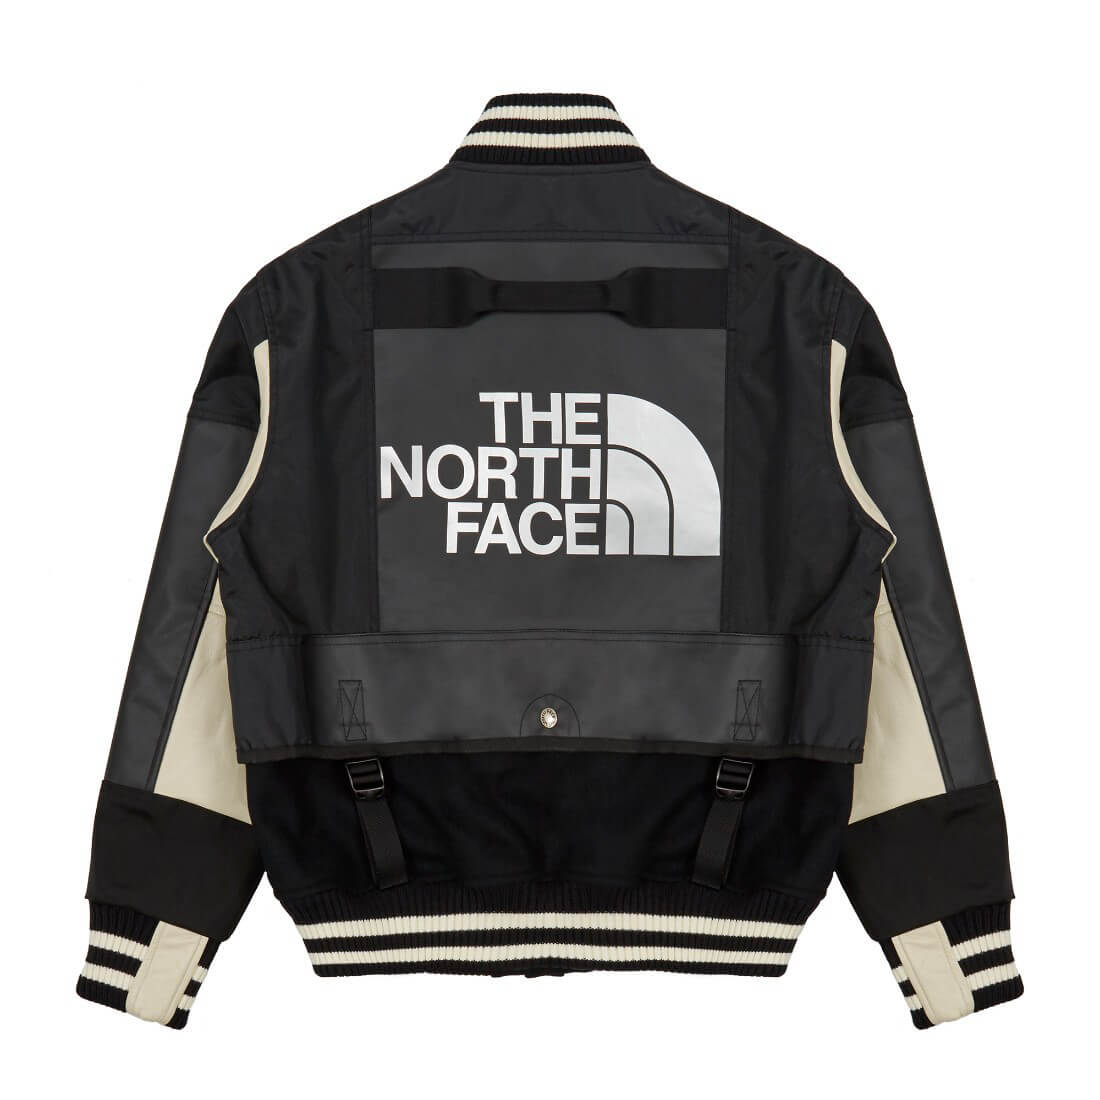 The North Face® x Comme des Garçons - Ape to Gentleman